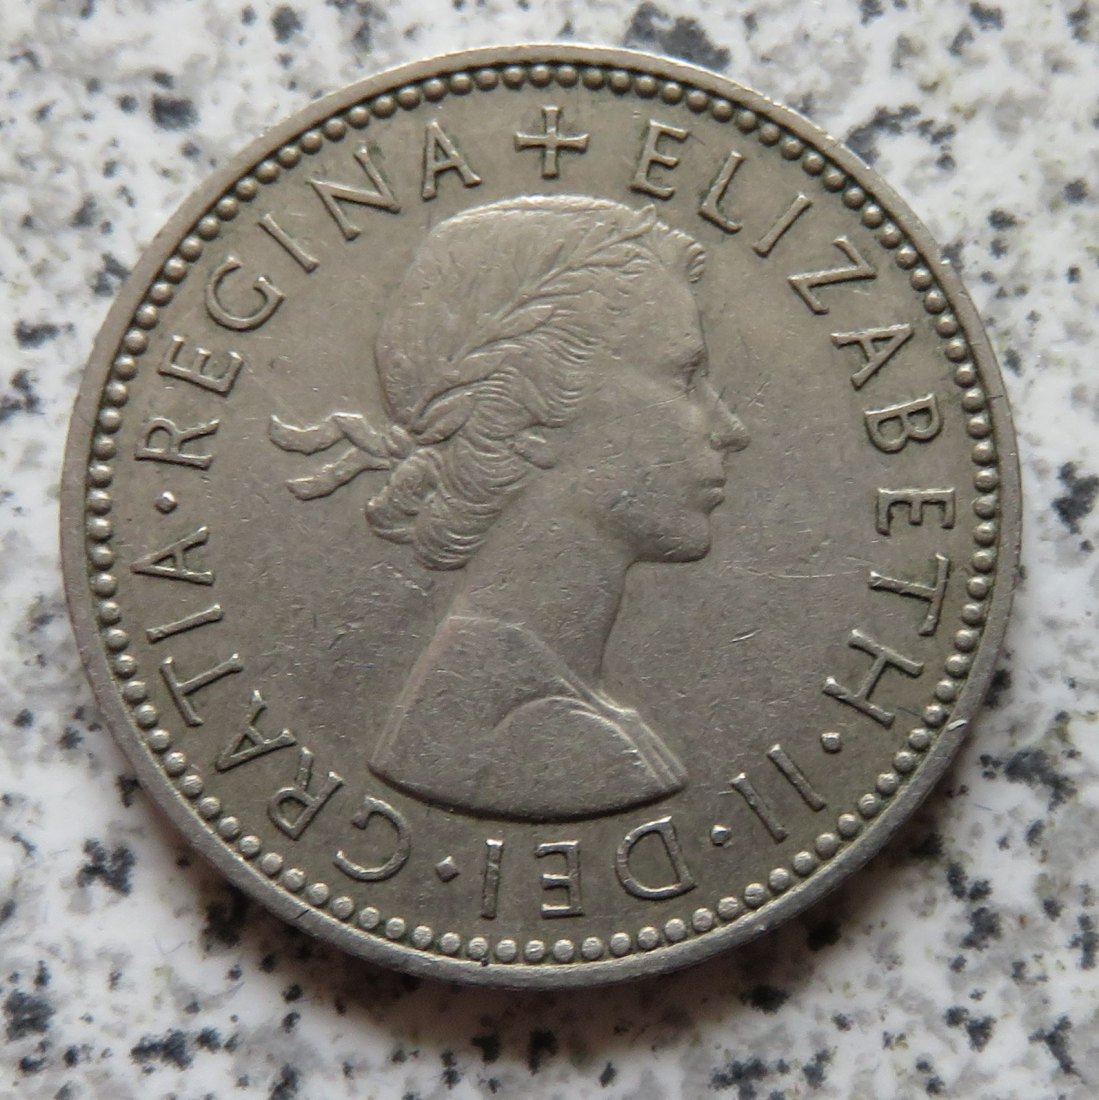  Großbritannien 1 Shilling 1956, Englisch (4)   